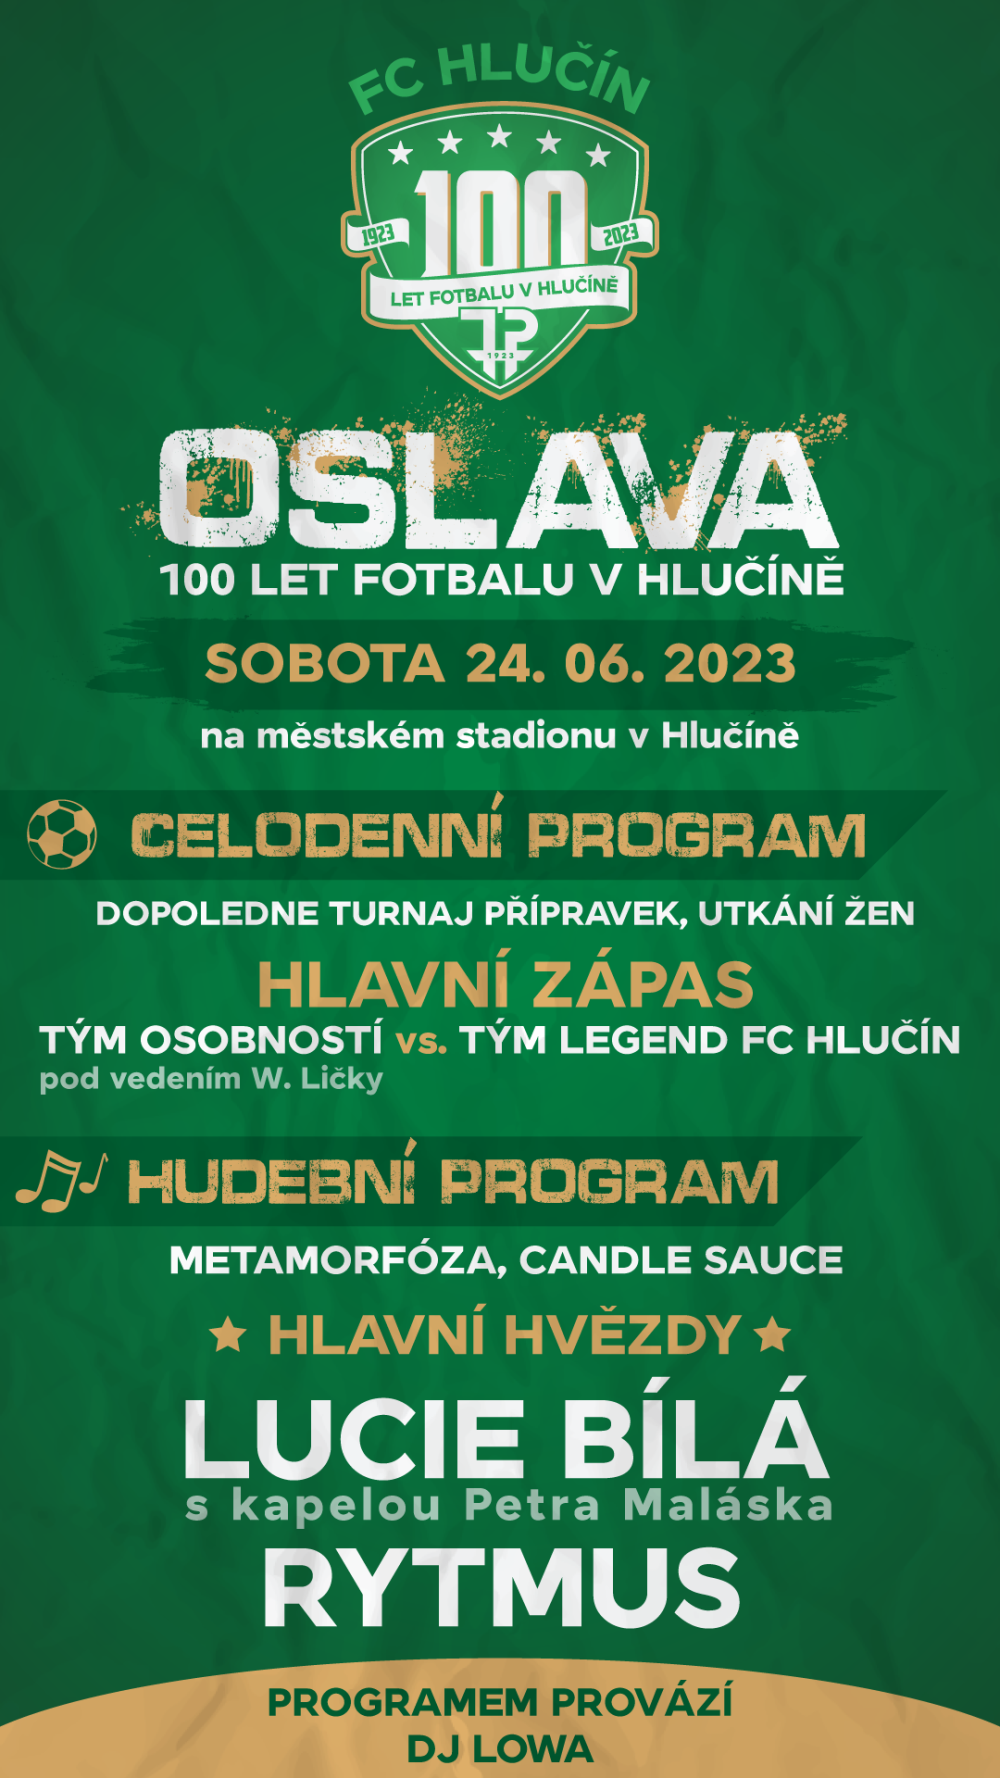 Oslavy 100 let fotbalu v Hlučíně